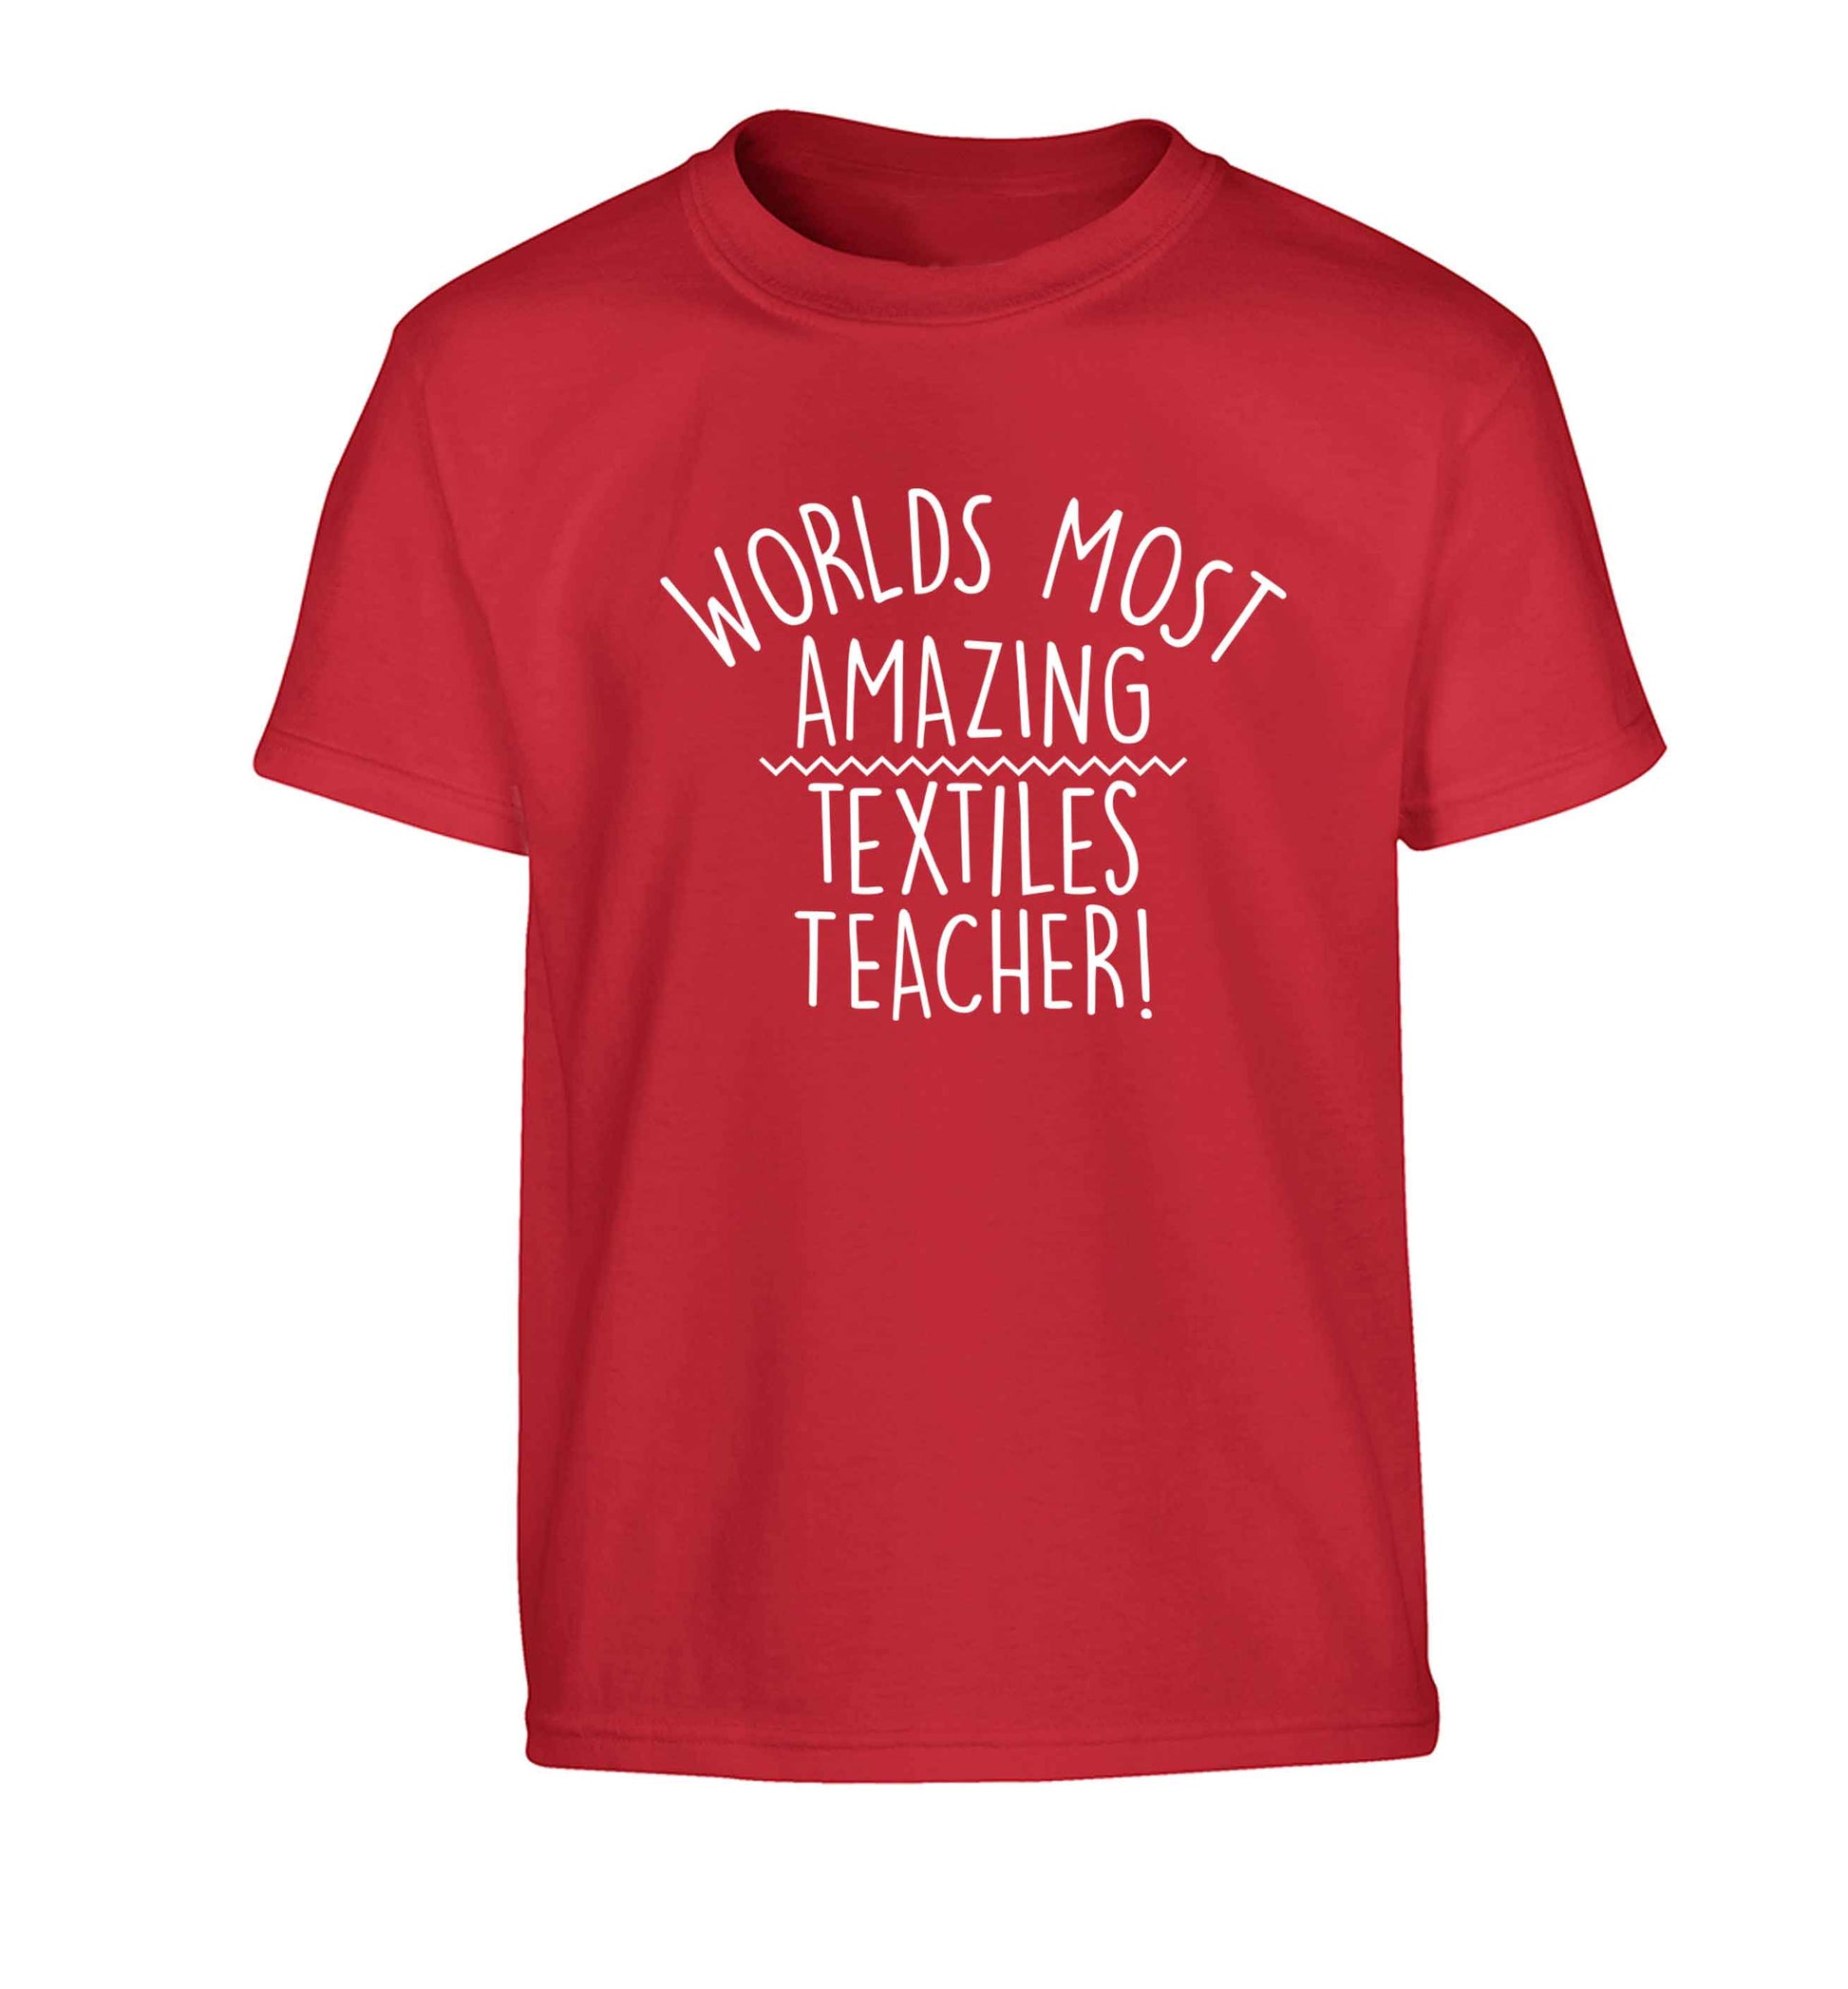 Worlds most amazing textiles teacher Children's red Tshirt 12-13 Years